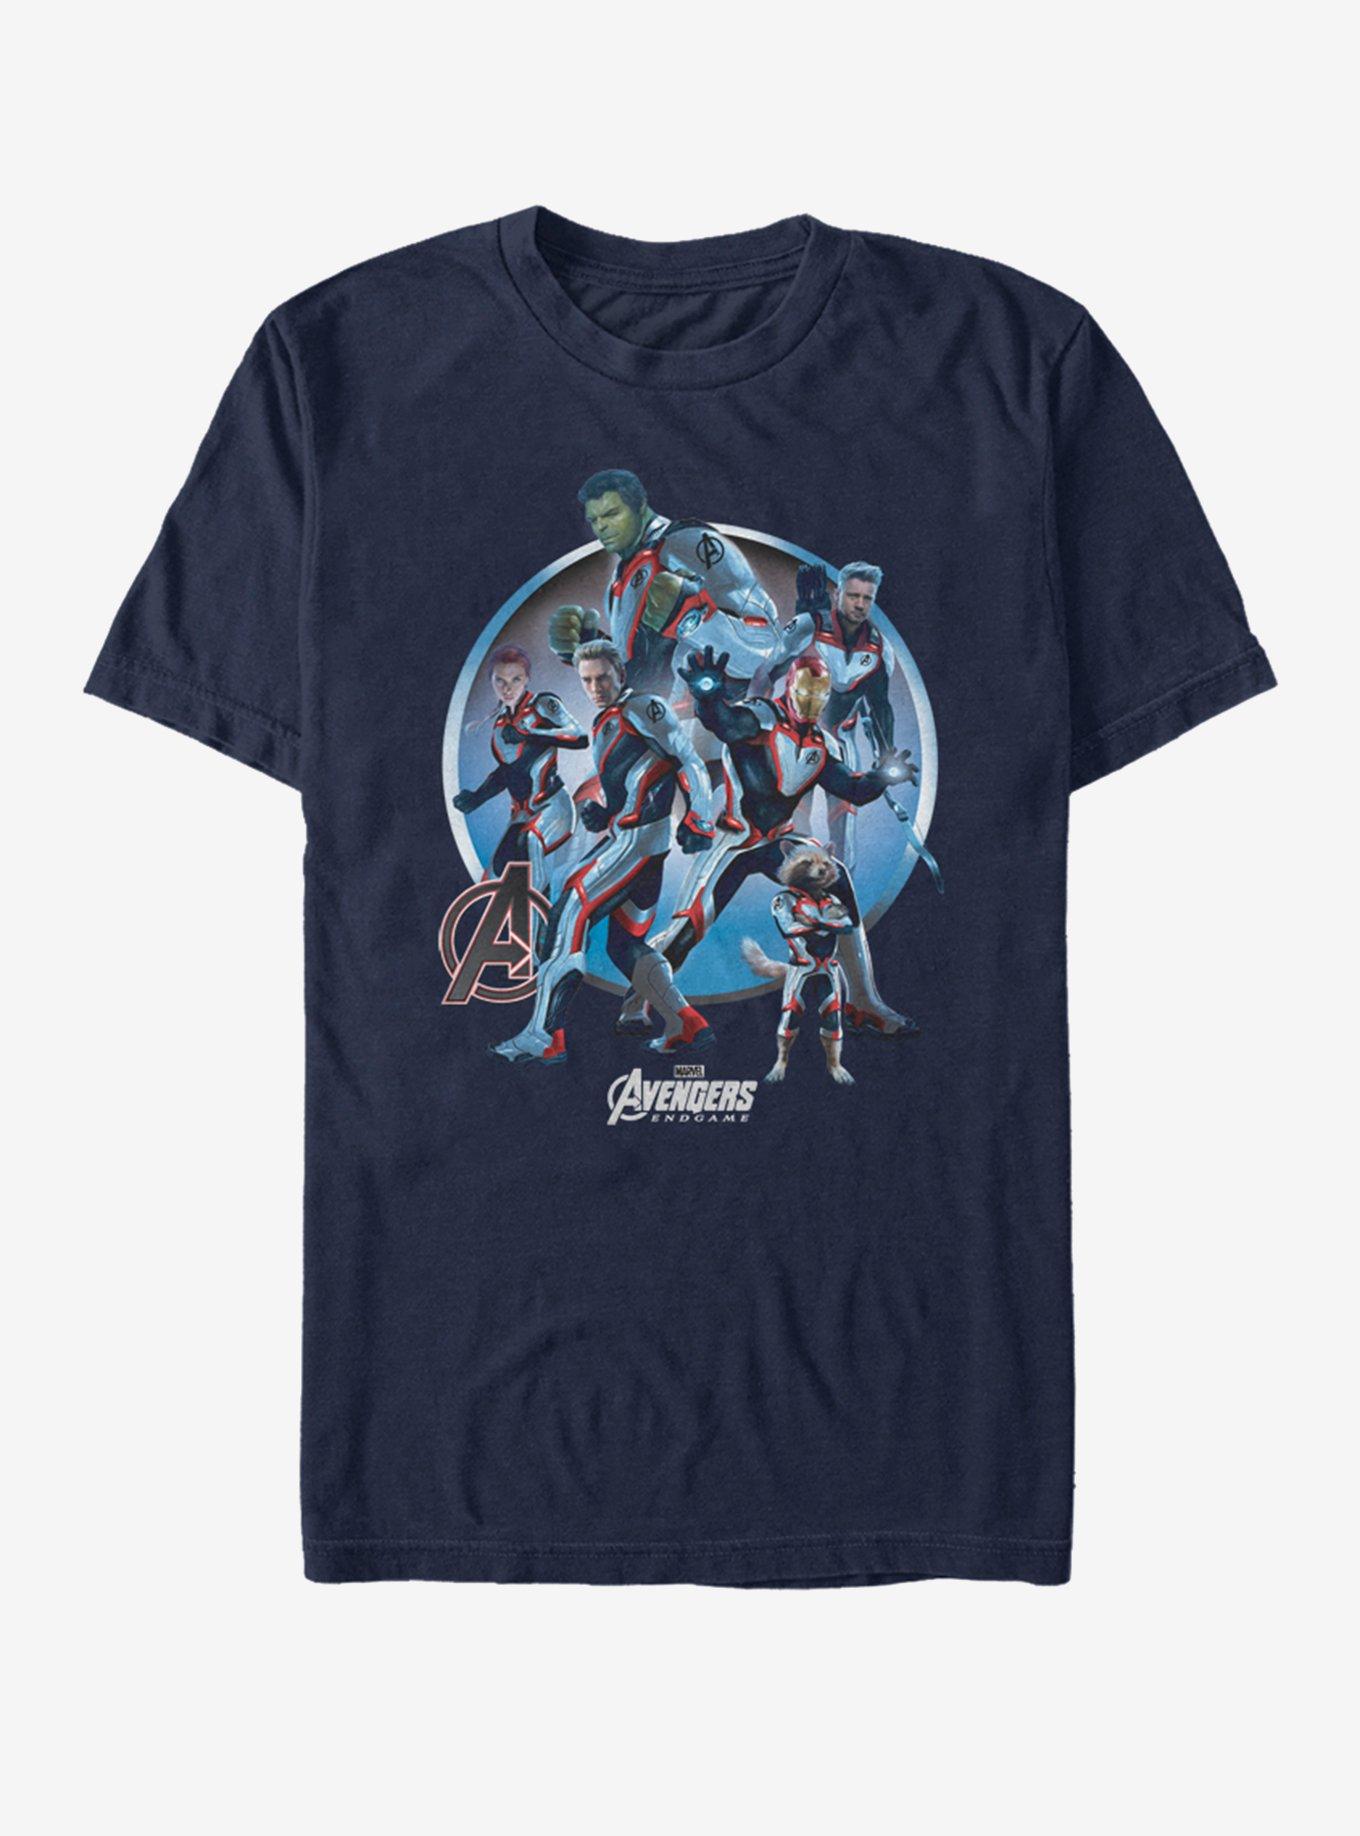 Marvel Avengers: Endgame Endgamers Unite T-Shirt, NAVY, hi-res